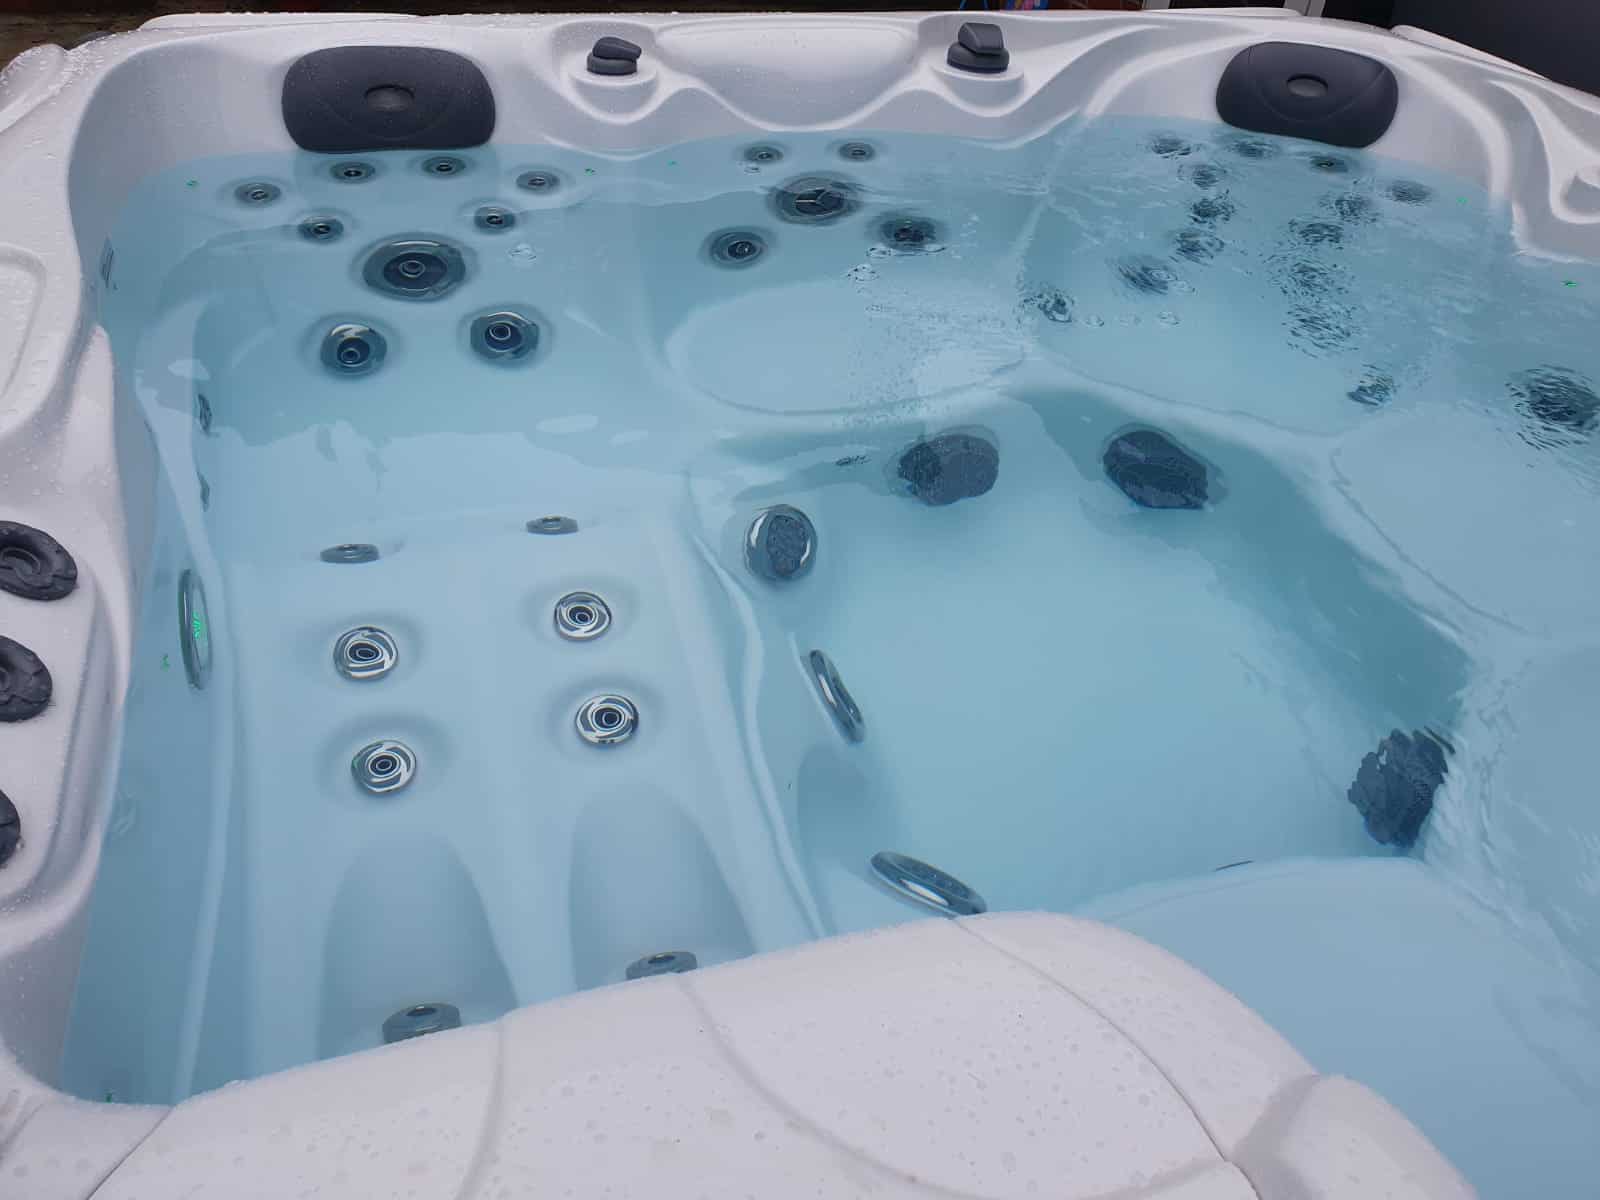 Sapphire hot tub